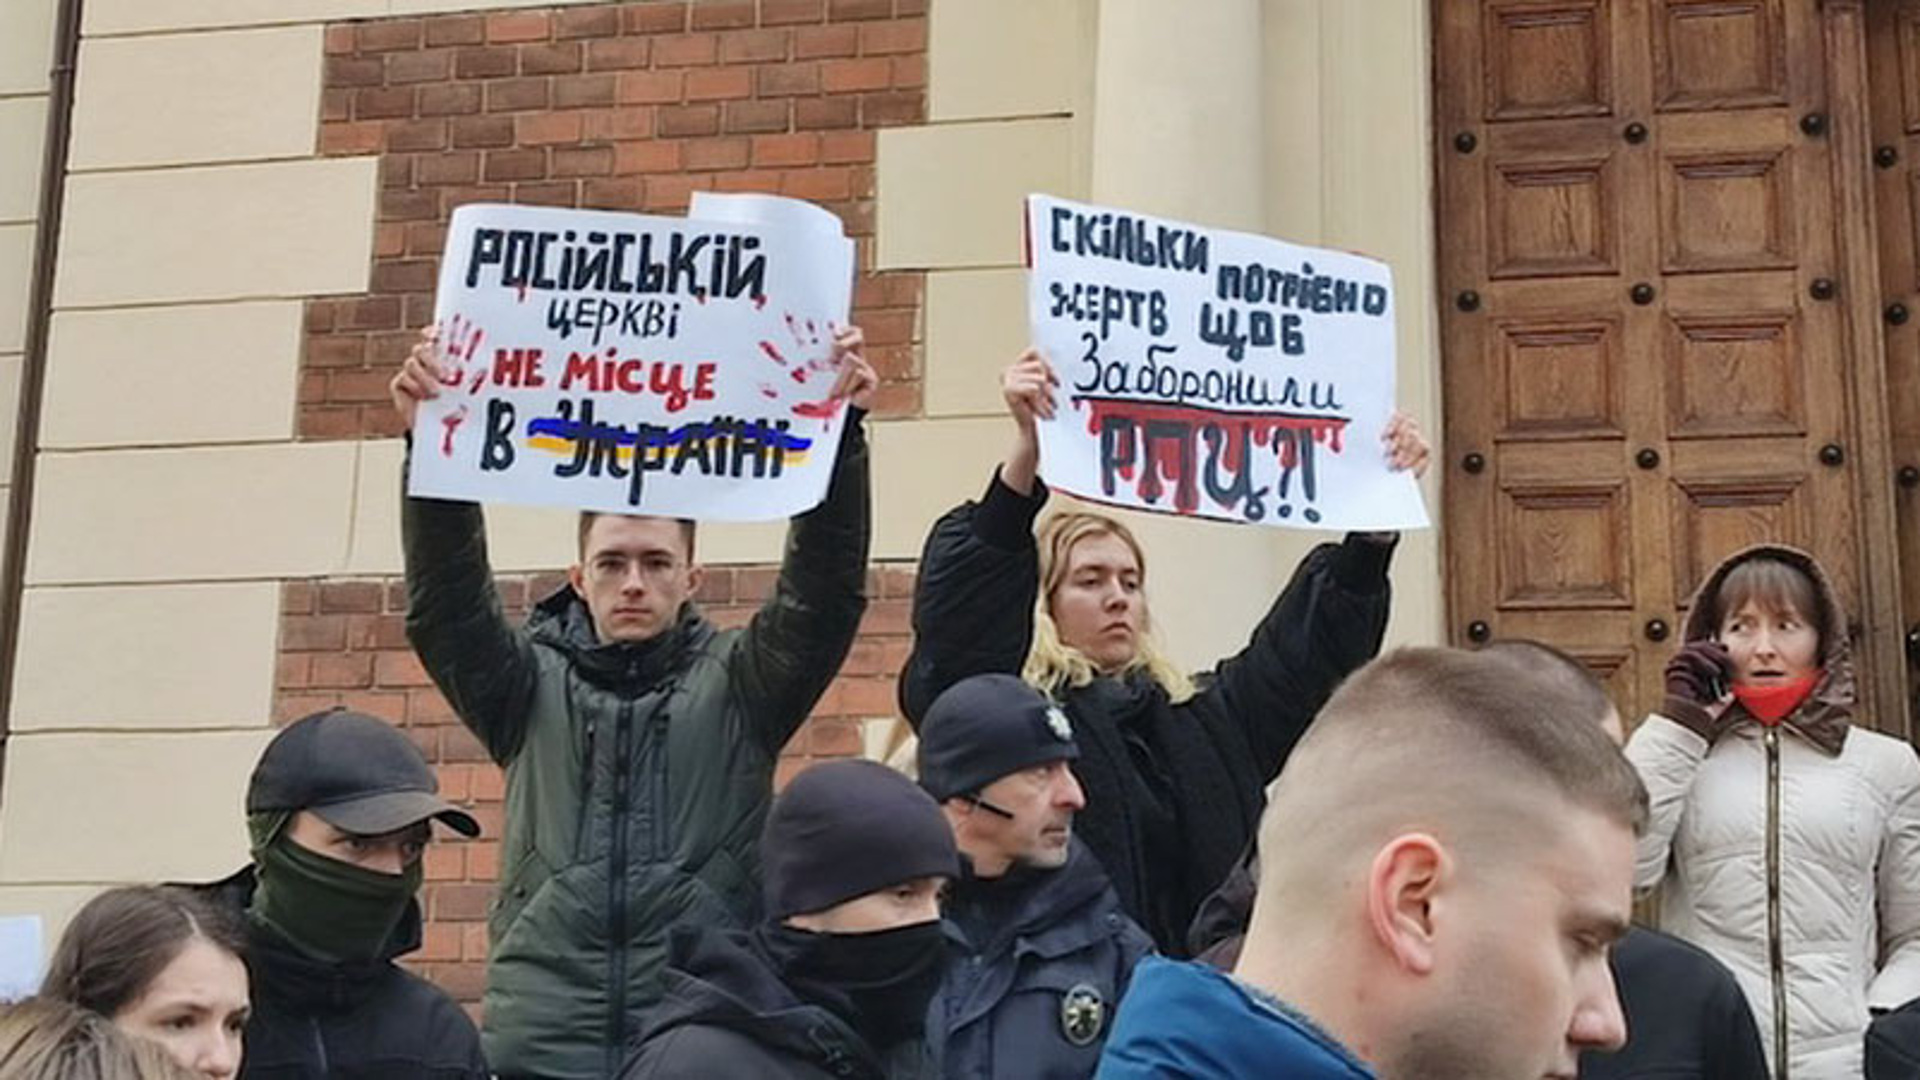 Украинцы захватили белгород. Человек с плакатом. Псевдопатриотические лозунги. Захват храмов на Украине.